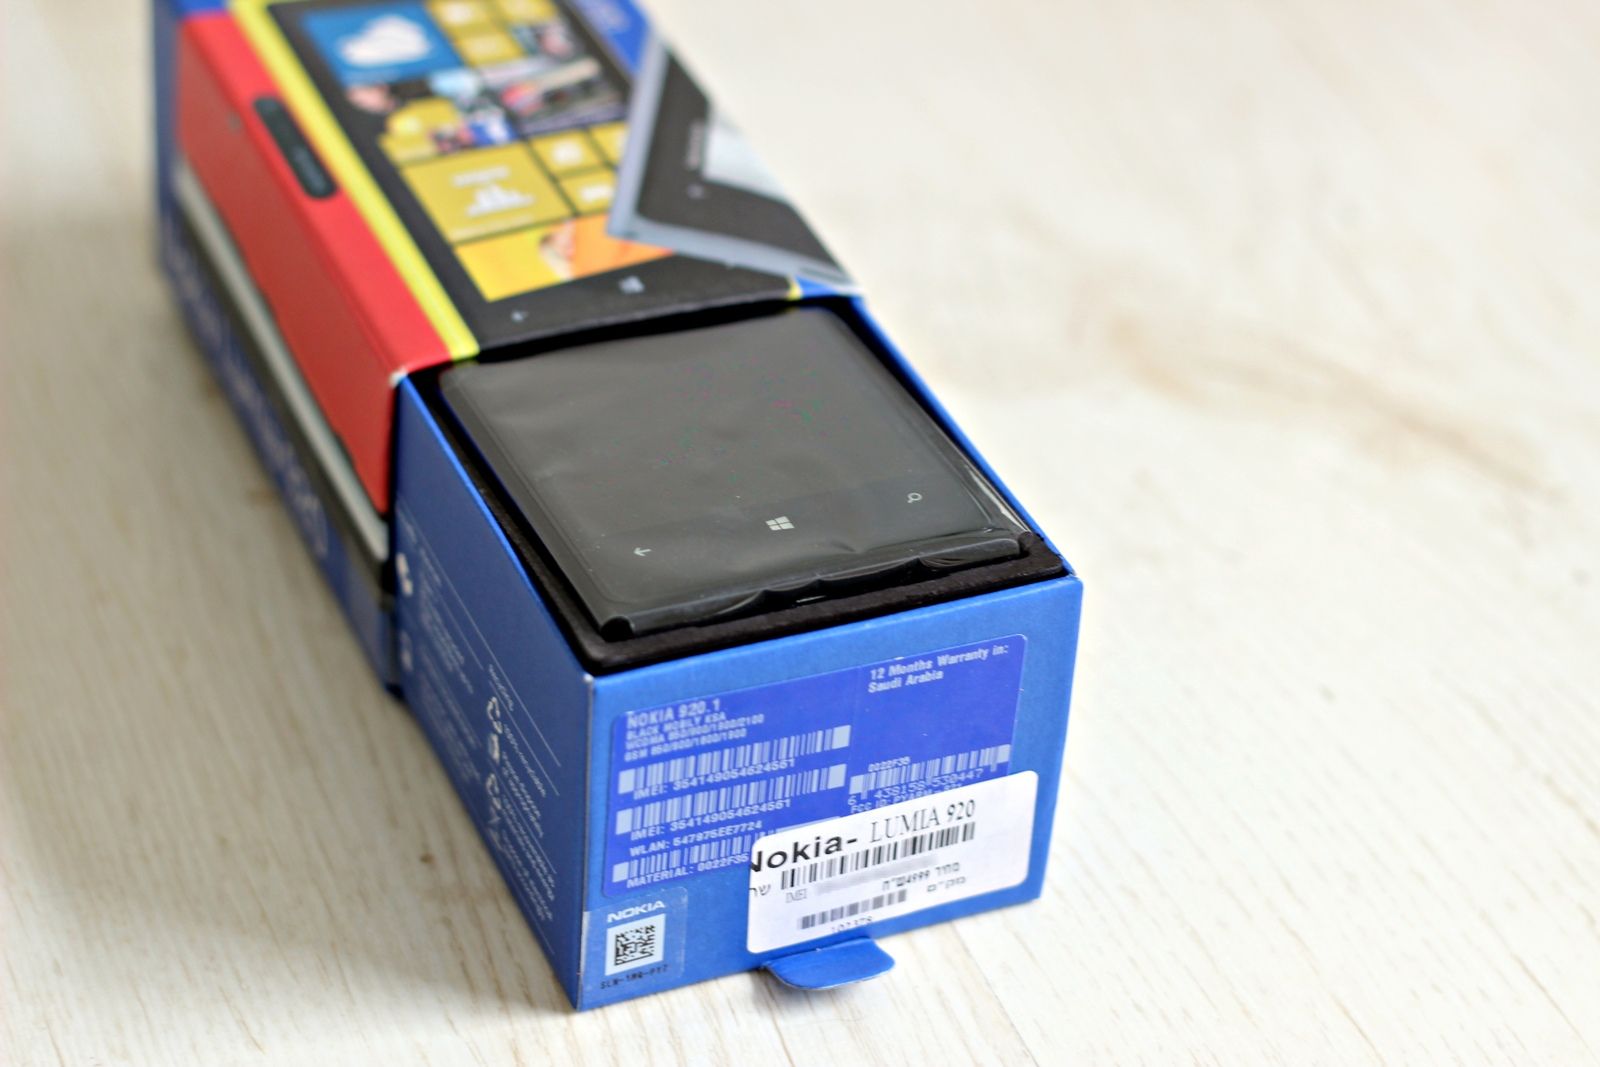 nokia lumia 920 review